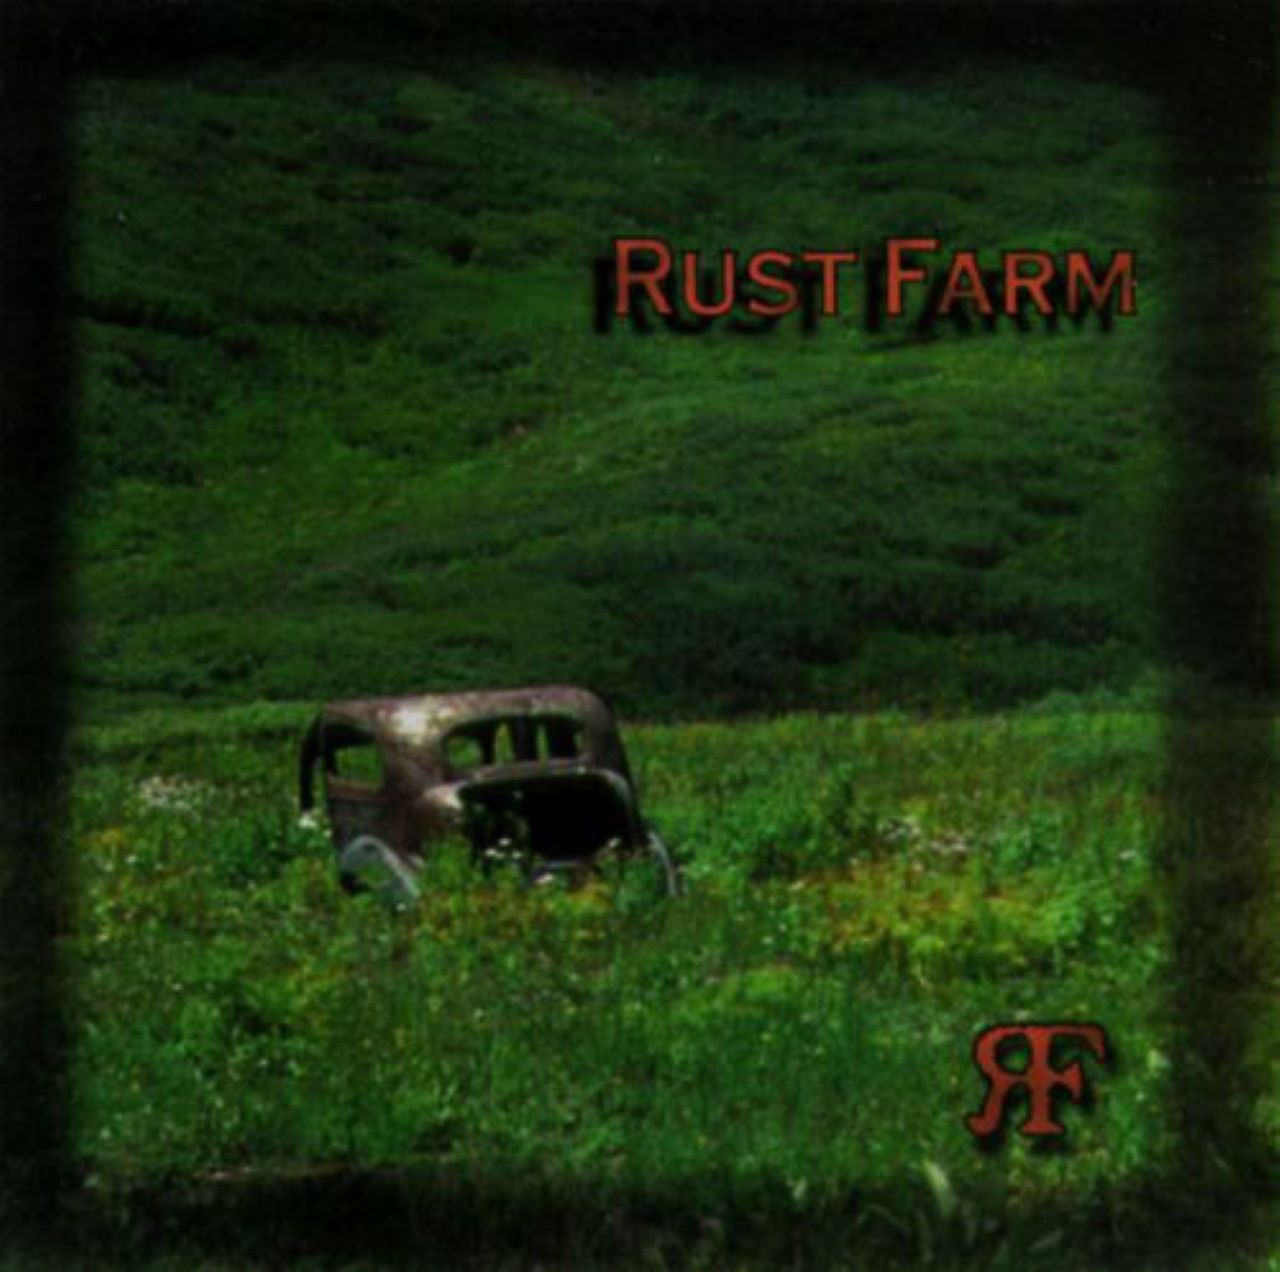 Rust Farm - Rust Farm cover album